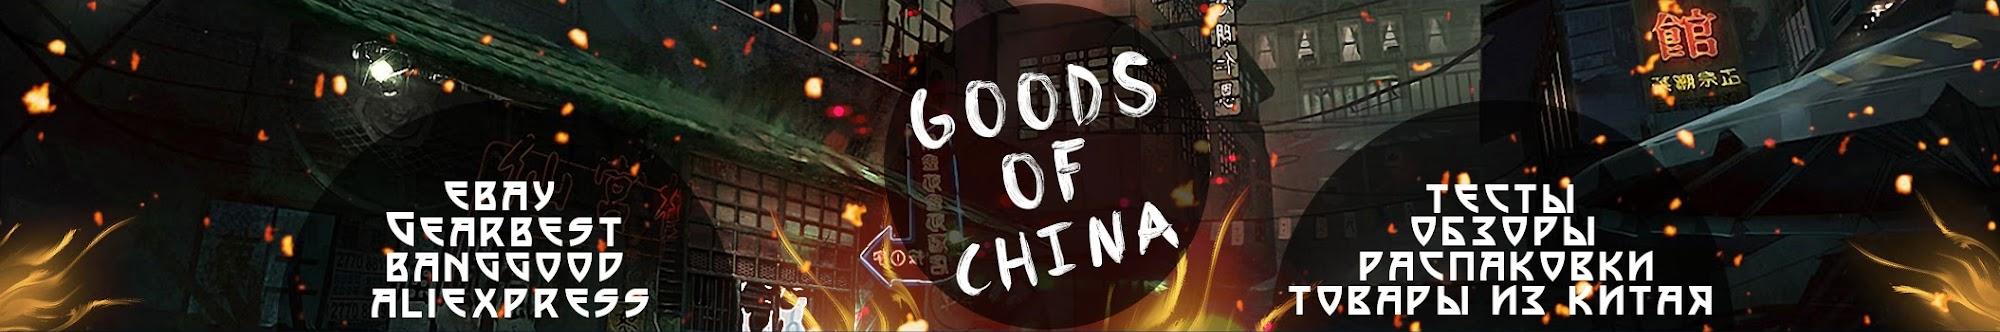 Goods Of China